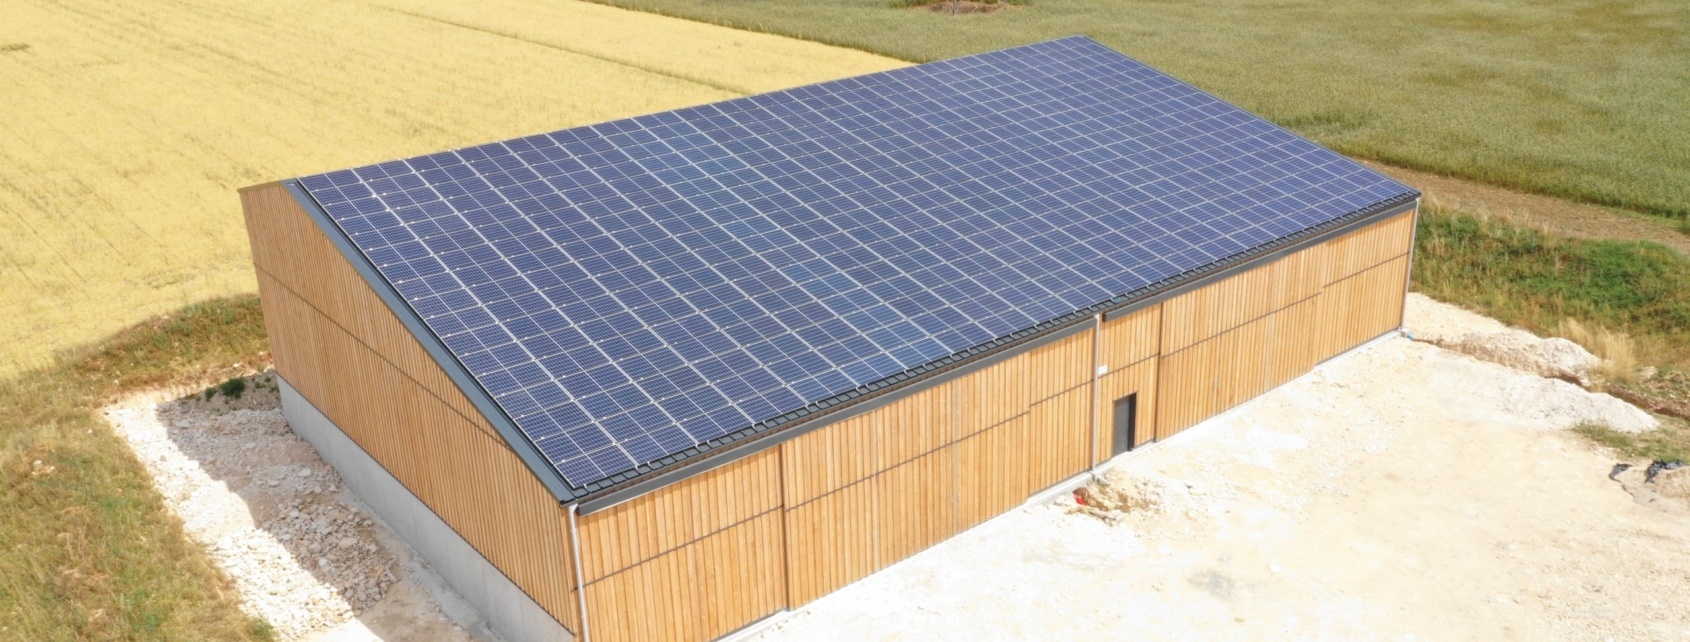 Bâtiment agricole photovoltaïque réalisé par GROUPE ROY ÉNERGIE